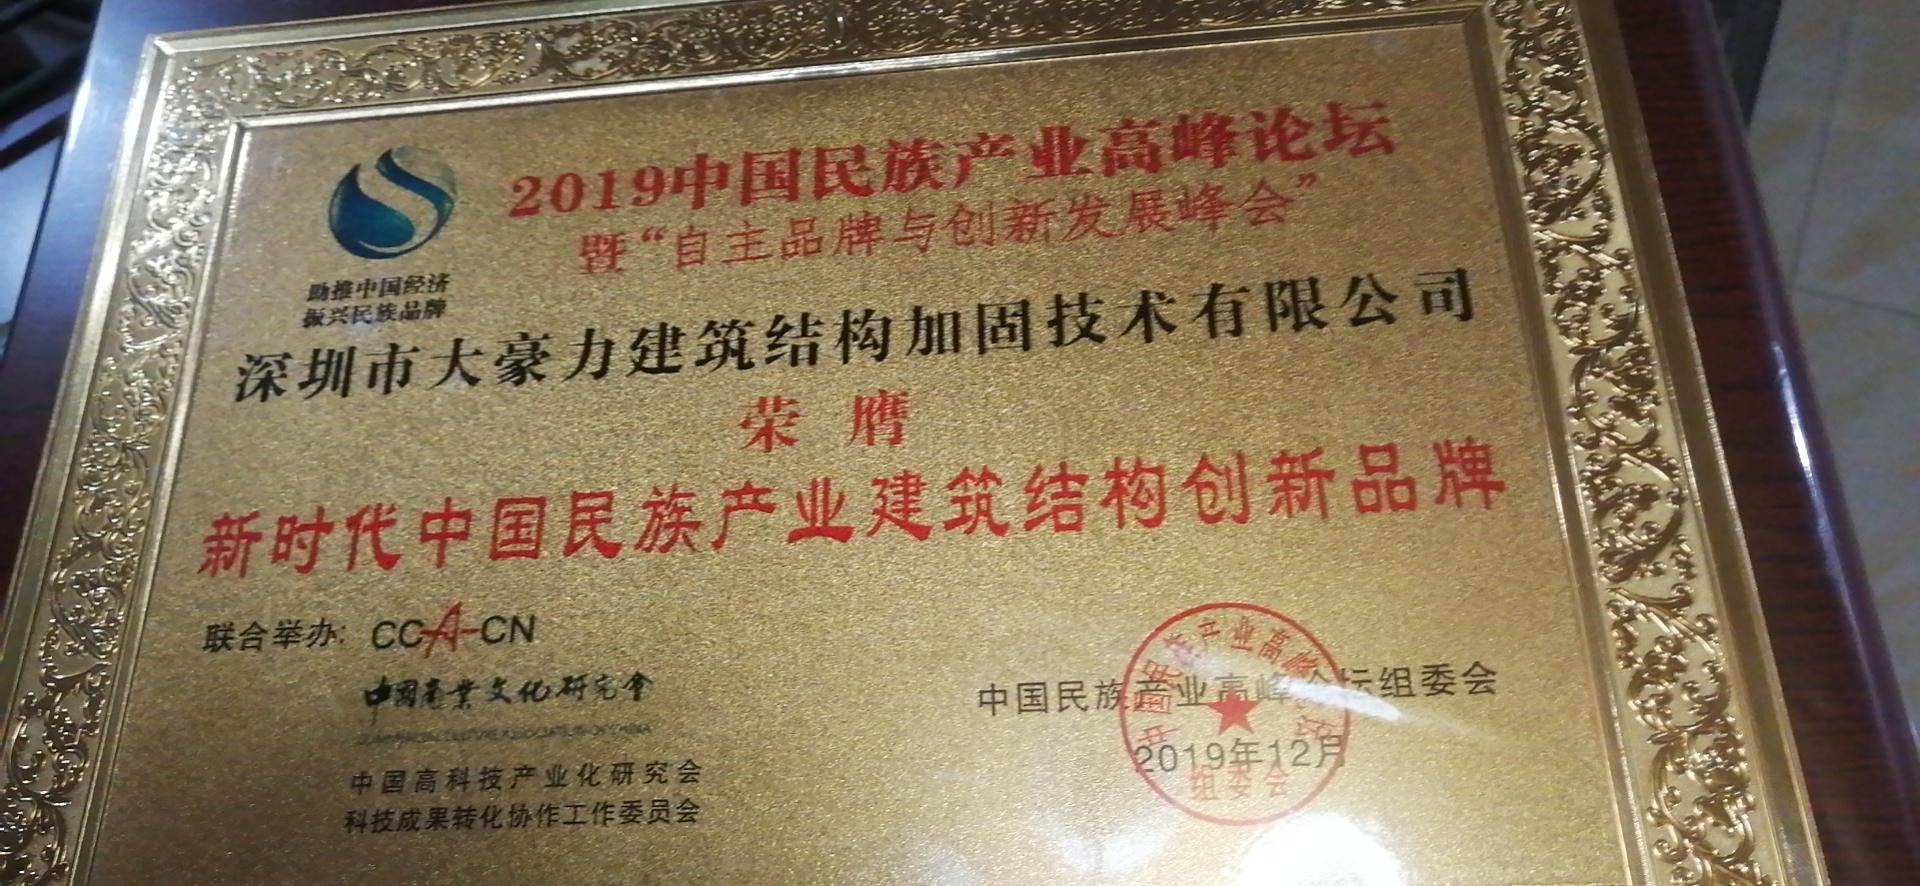 深圳市大豪力公司中国民族产业高峰论坛荣获金牌